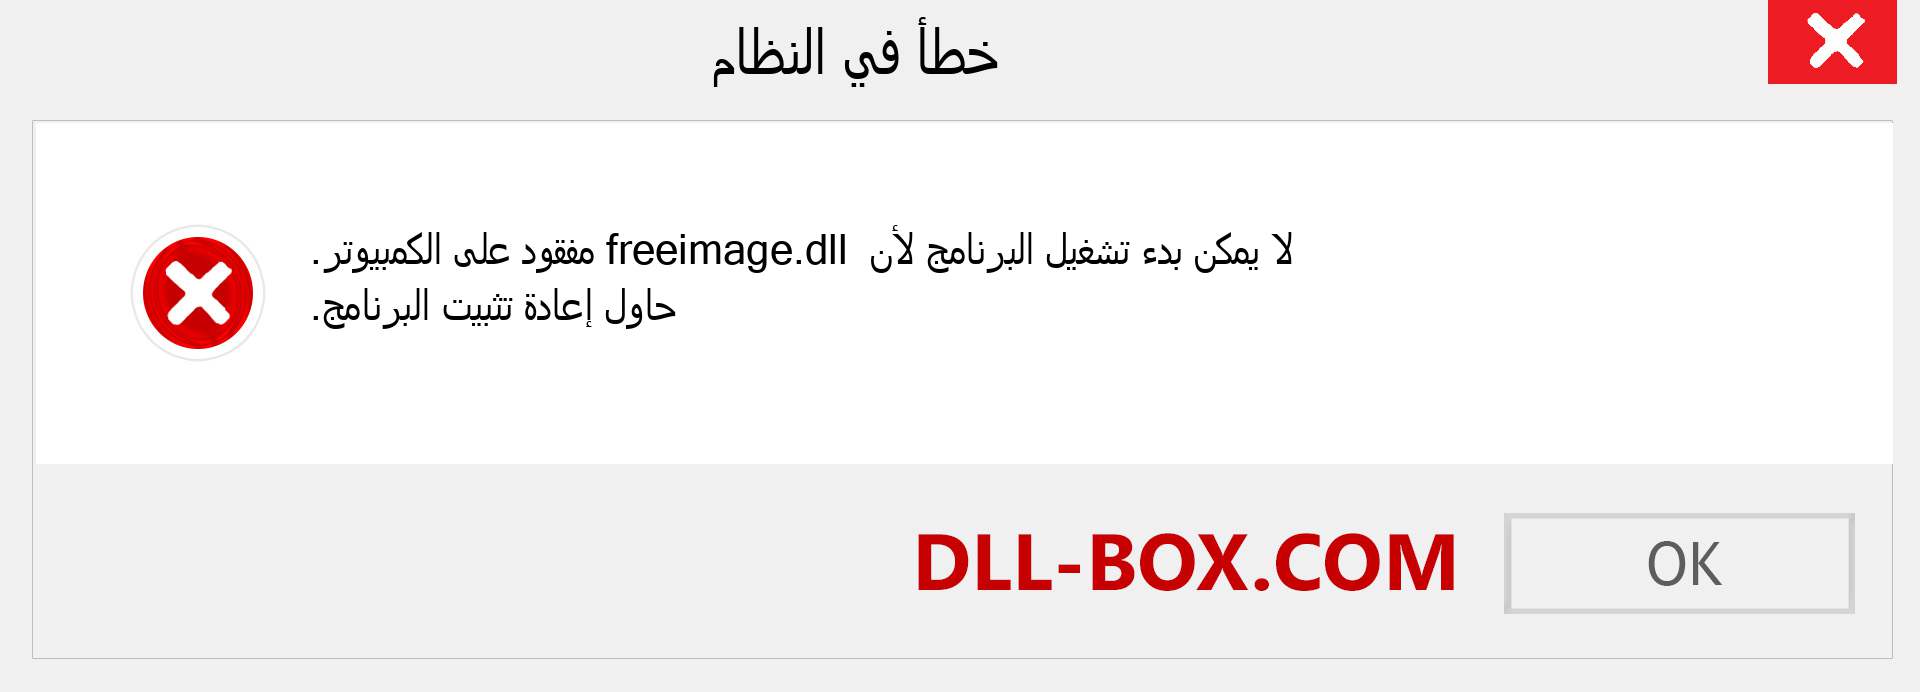 ملف freeimage.dll مفقود ؟. التنزيل لنظام التشغيل Windows 7 و 8 و 10 - إصلاح خطأ freeimage dll المفقود على Windows والصور والصور